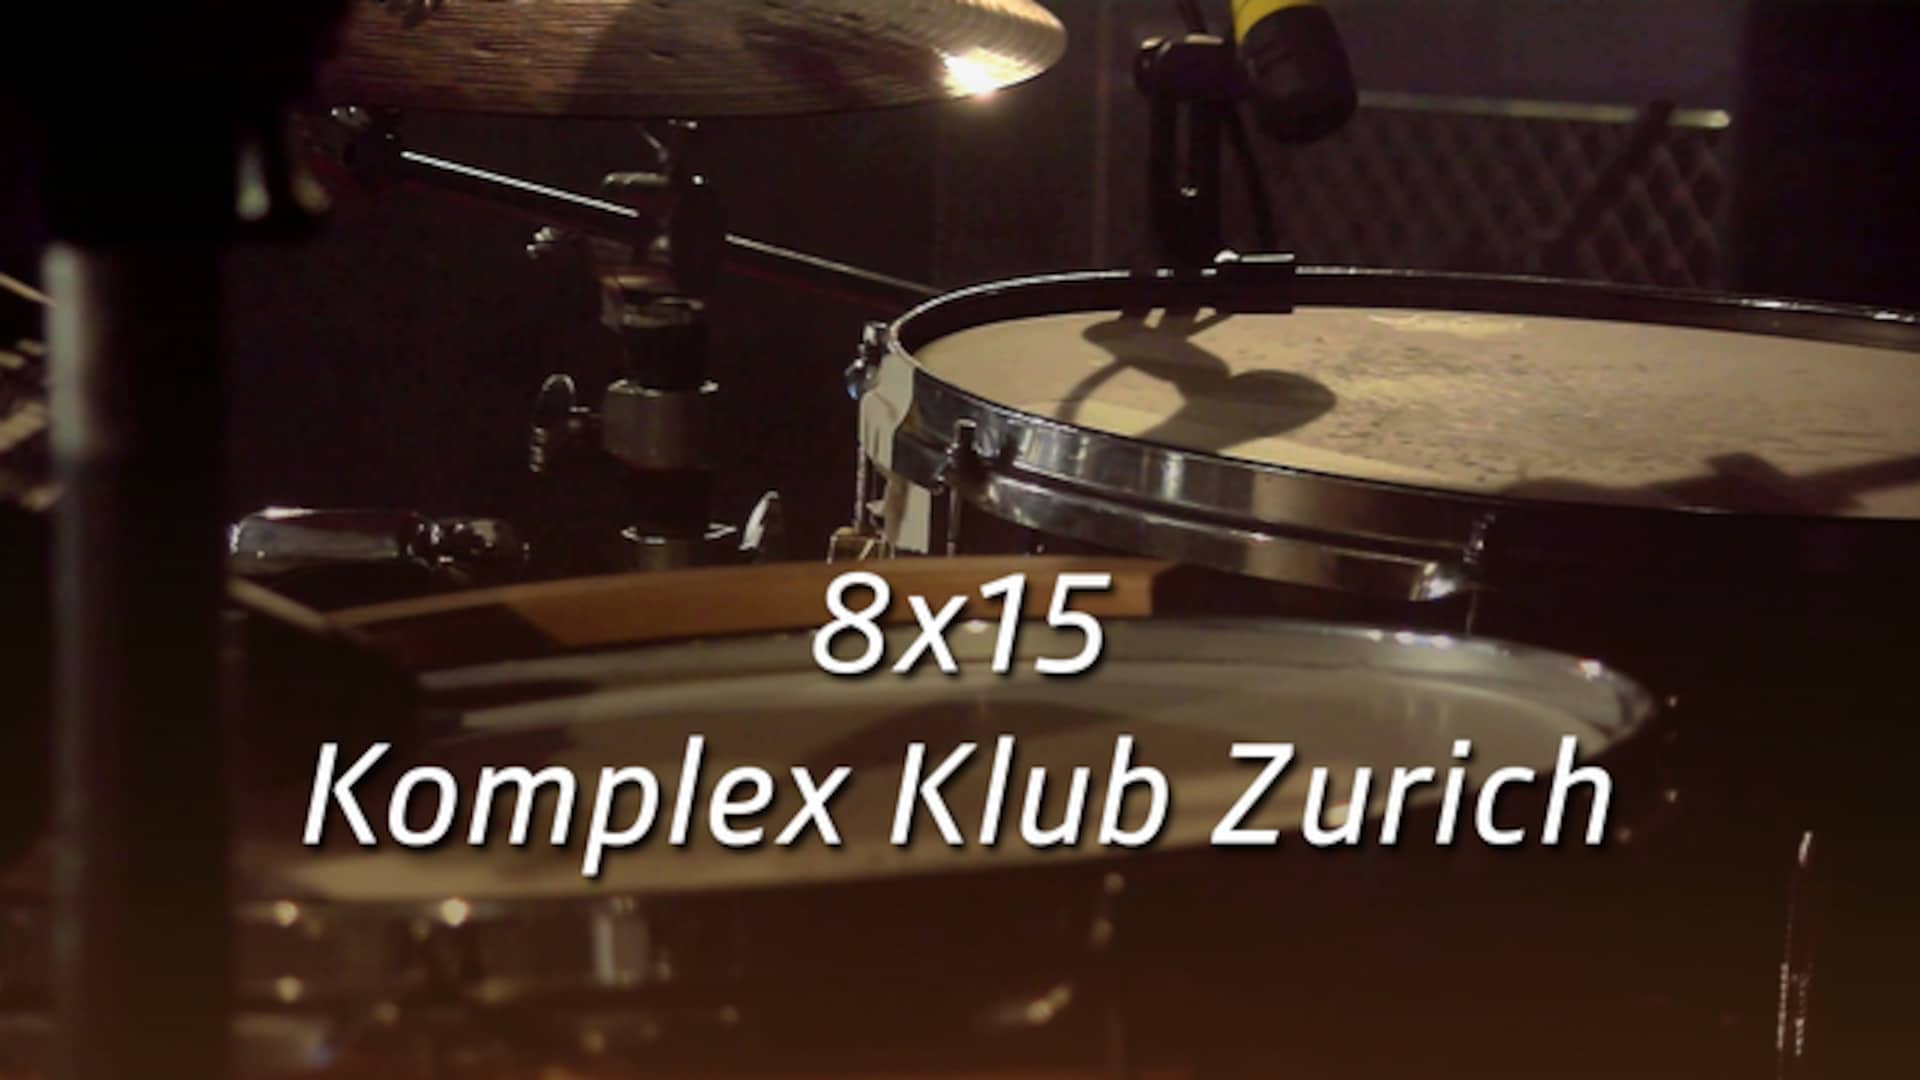 8x15 - Komplex Klub Zurich